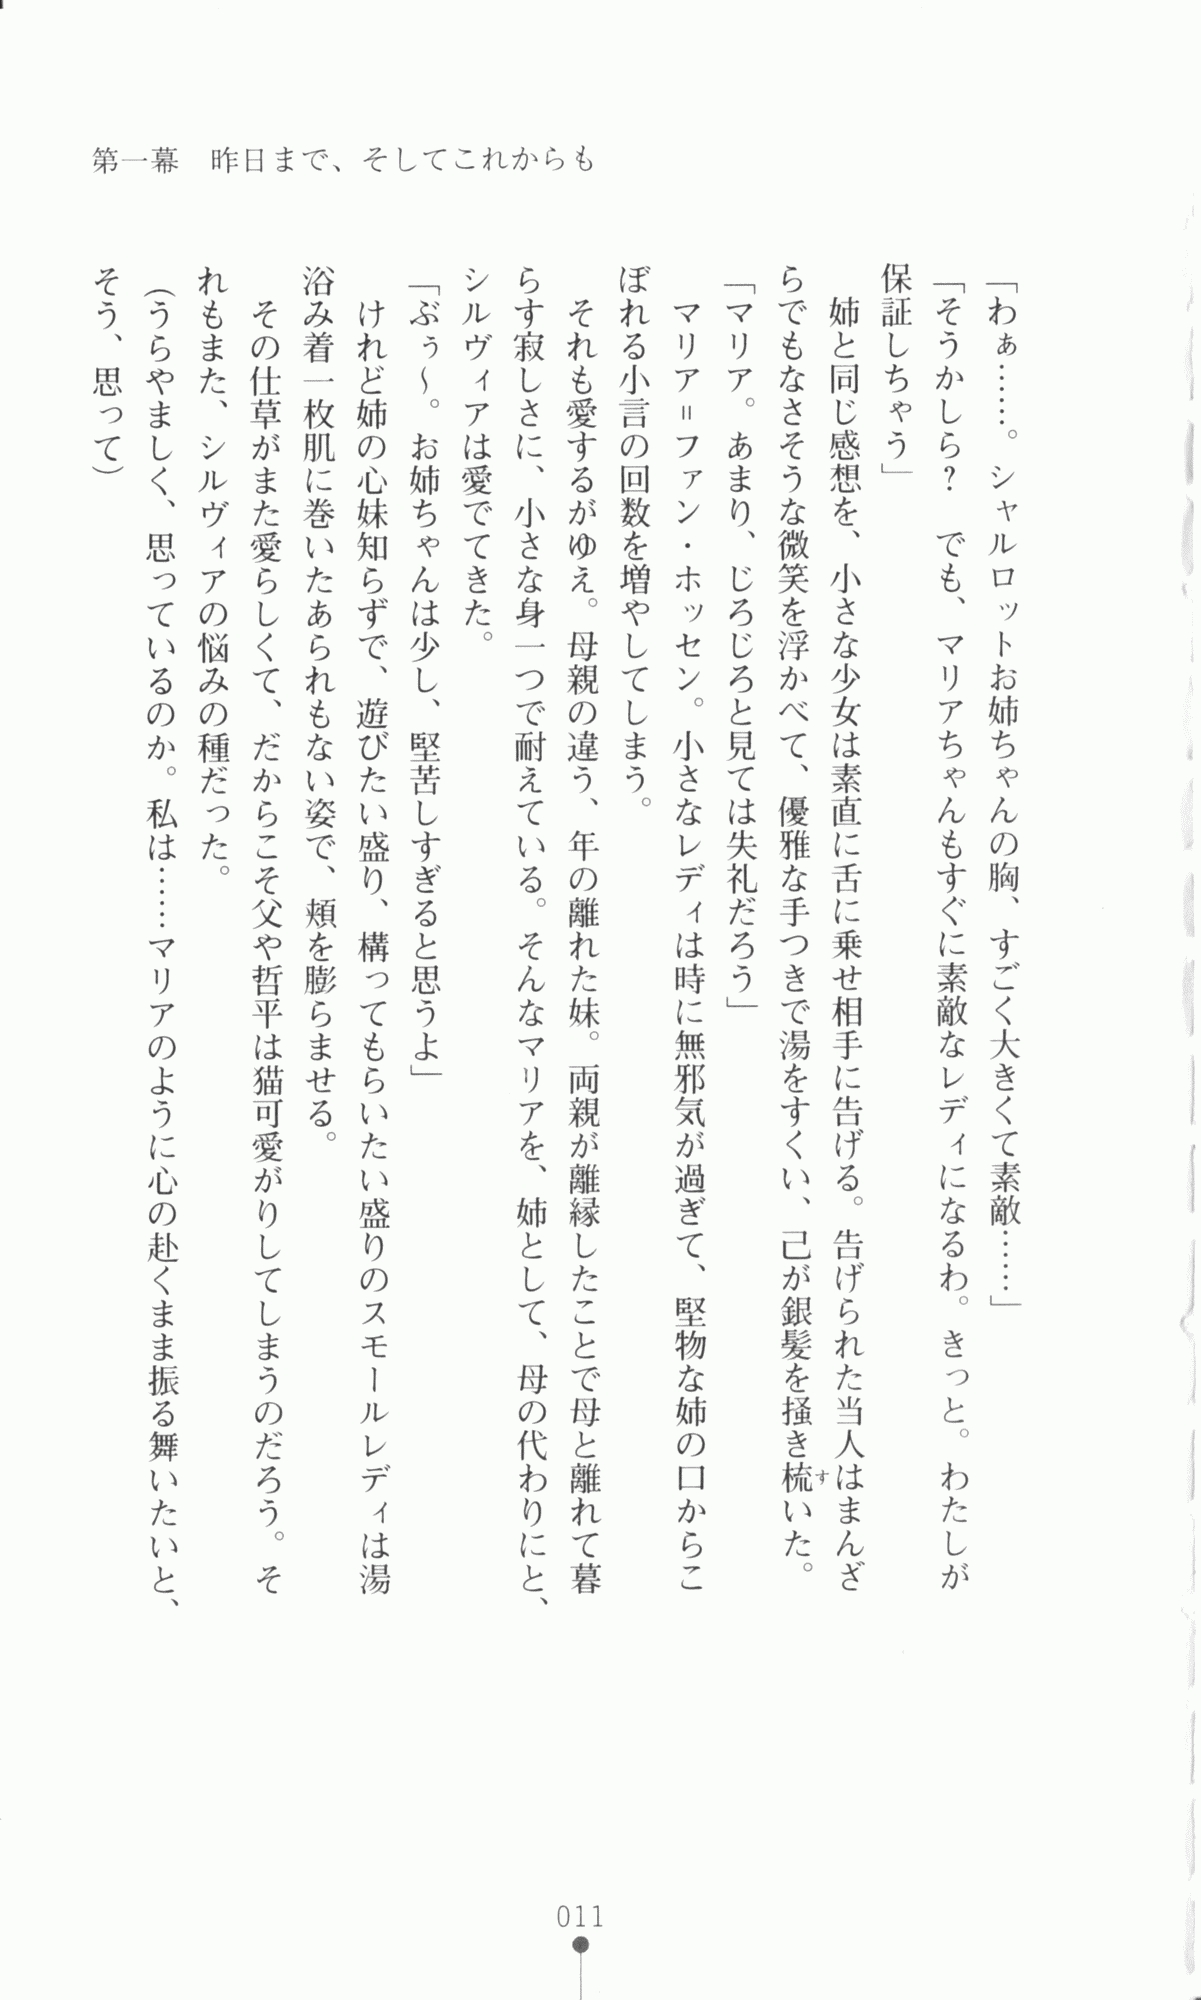 [Utsusemi × Yoshi Hyuma, Komori Kei] Princess Lover! Sylvia van Hossen no Koiji 2 (Original by Ricotta) 34